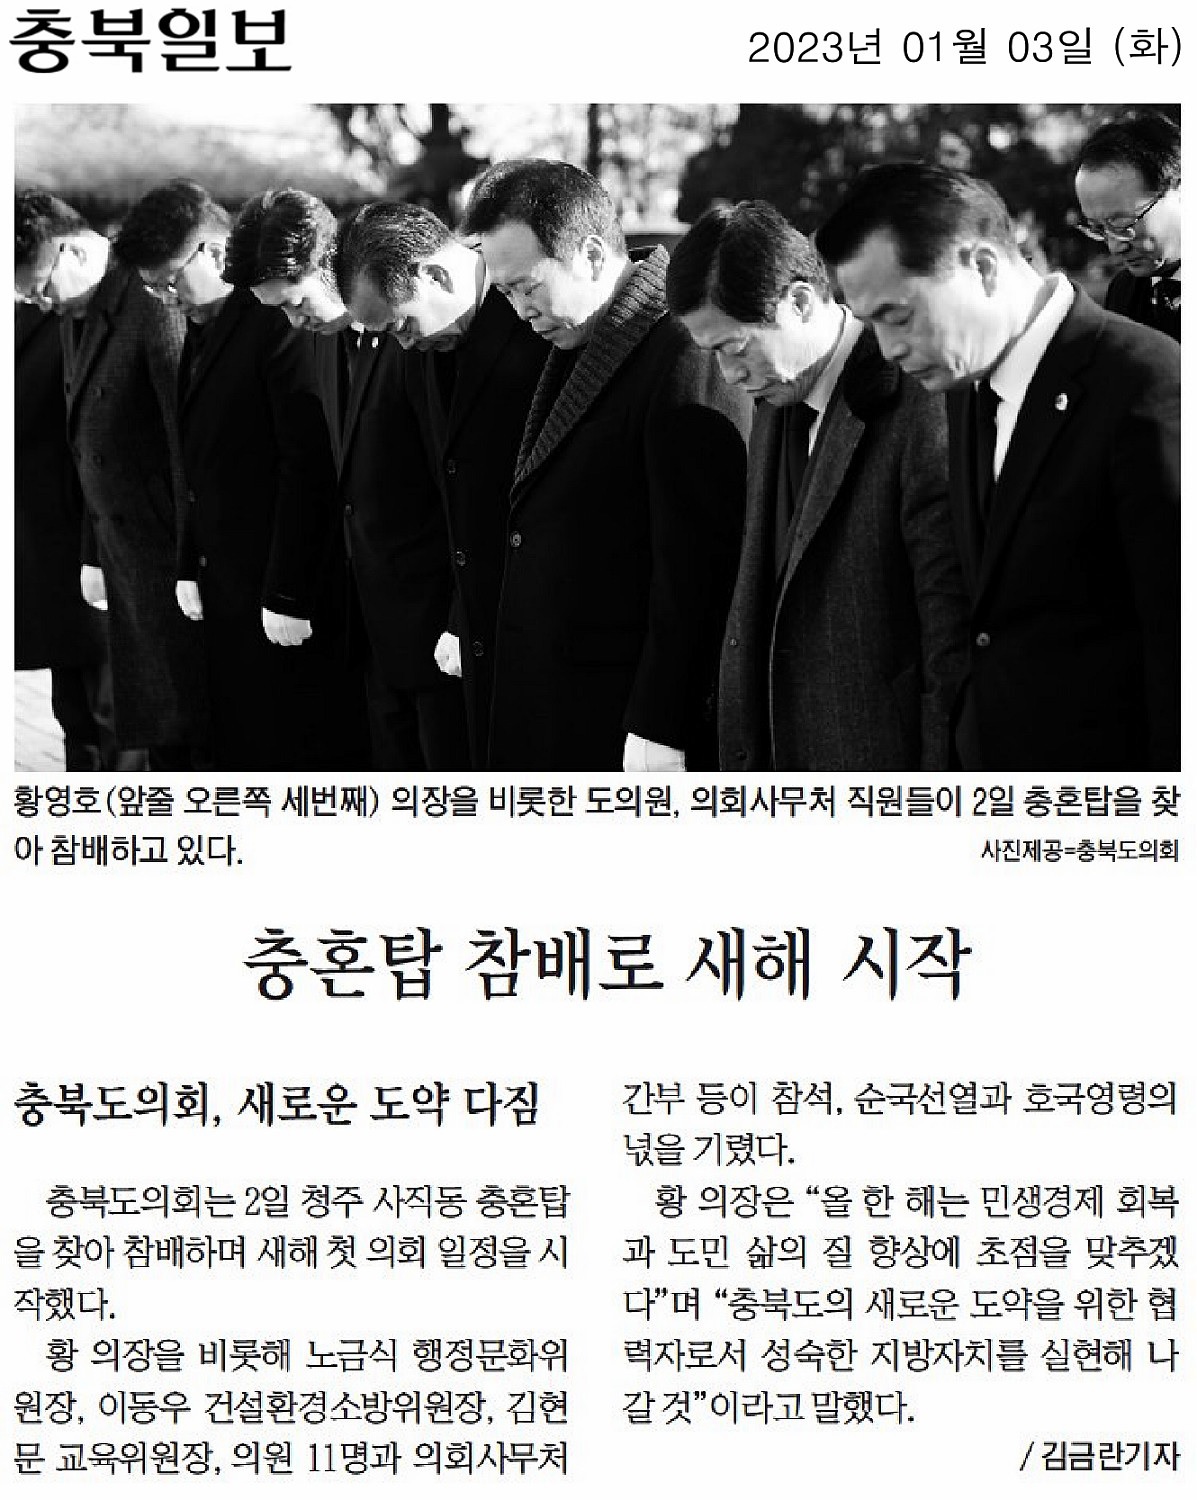 김현문,박재주,이욱희 의원, 충혼탑 참배 - 2